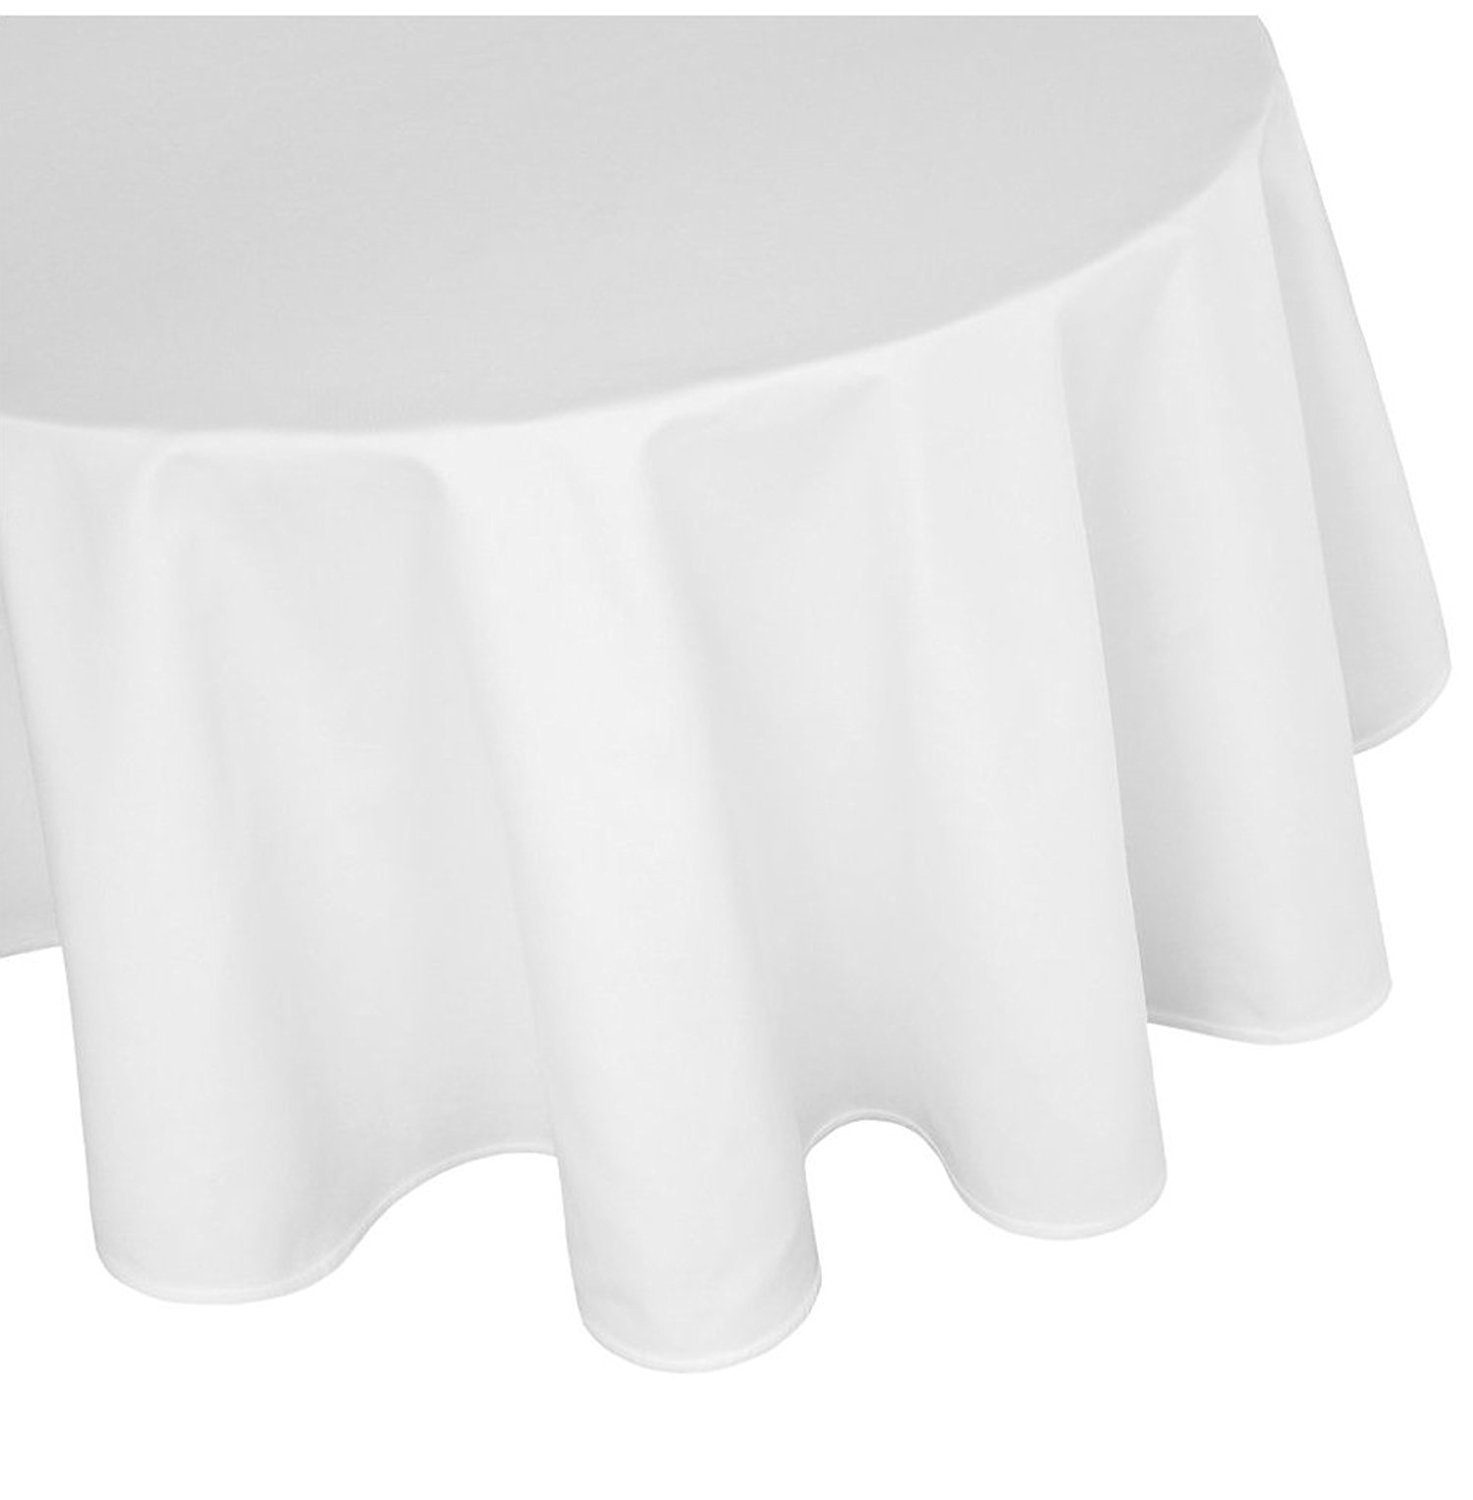 TextilDepot24 Tischdecke runde Tischdecke aus 100% Baumwolle - Damast -  Farbe weiß - diverse Größen